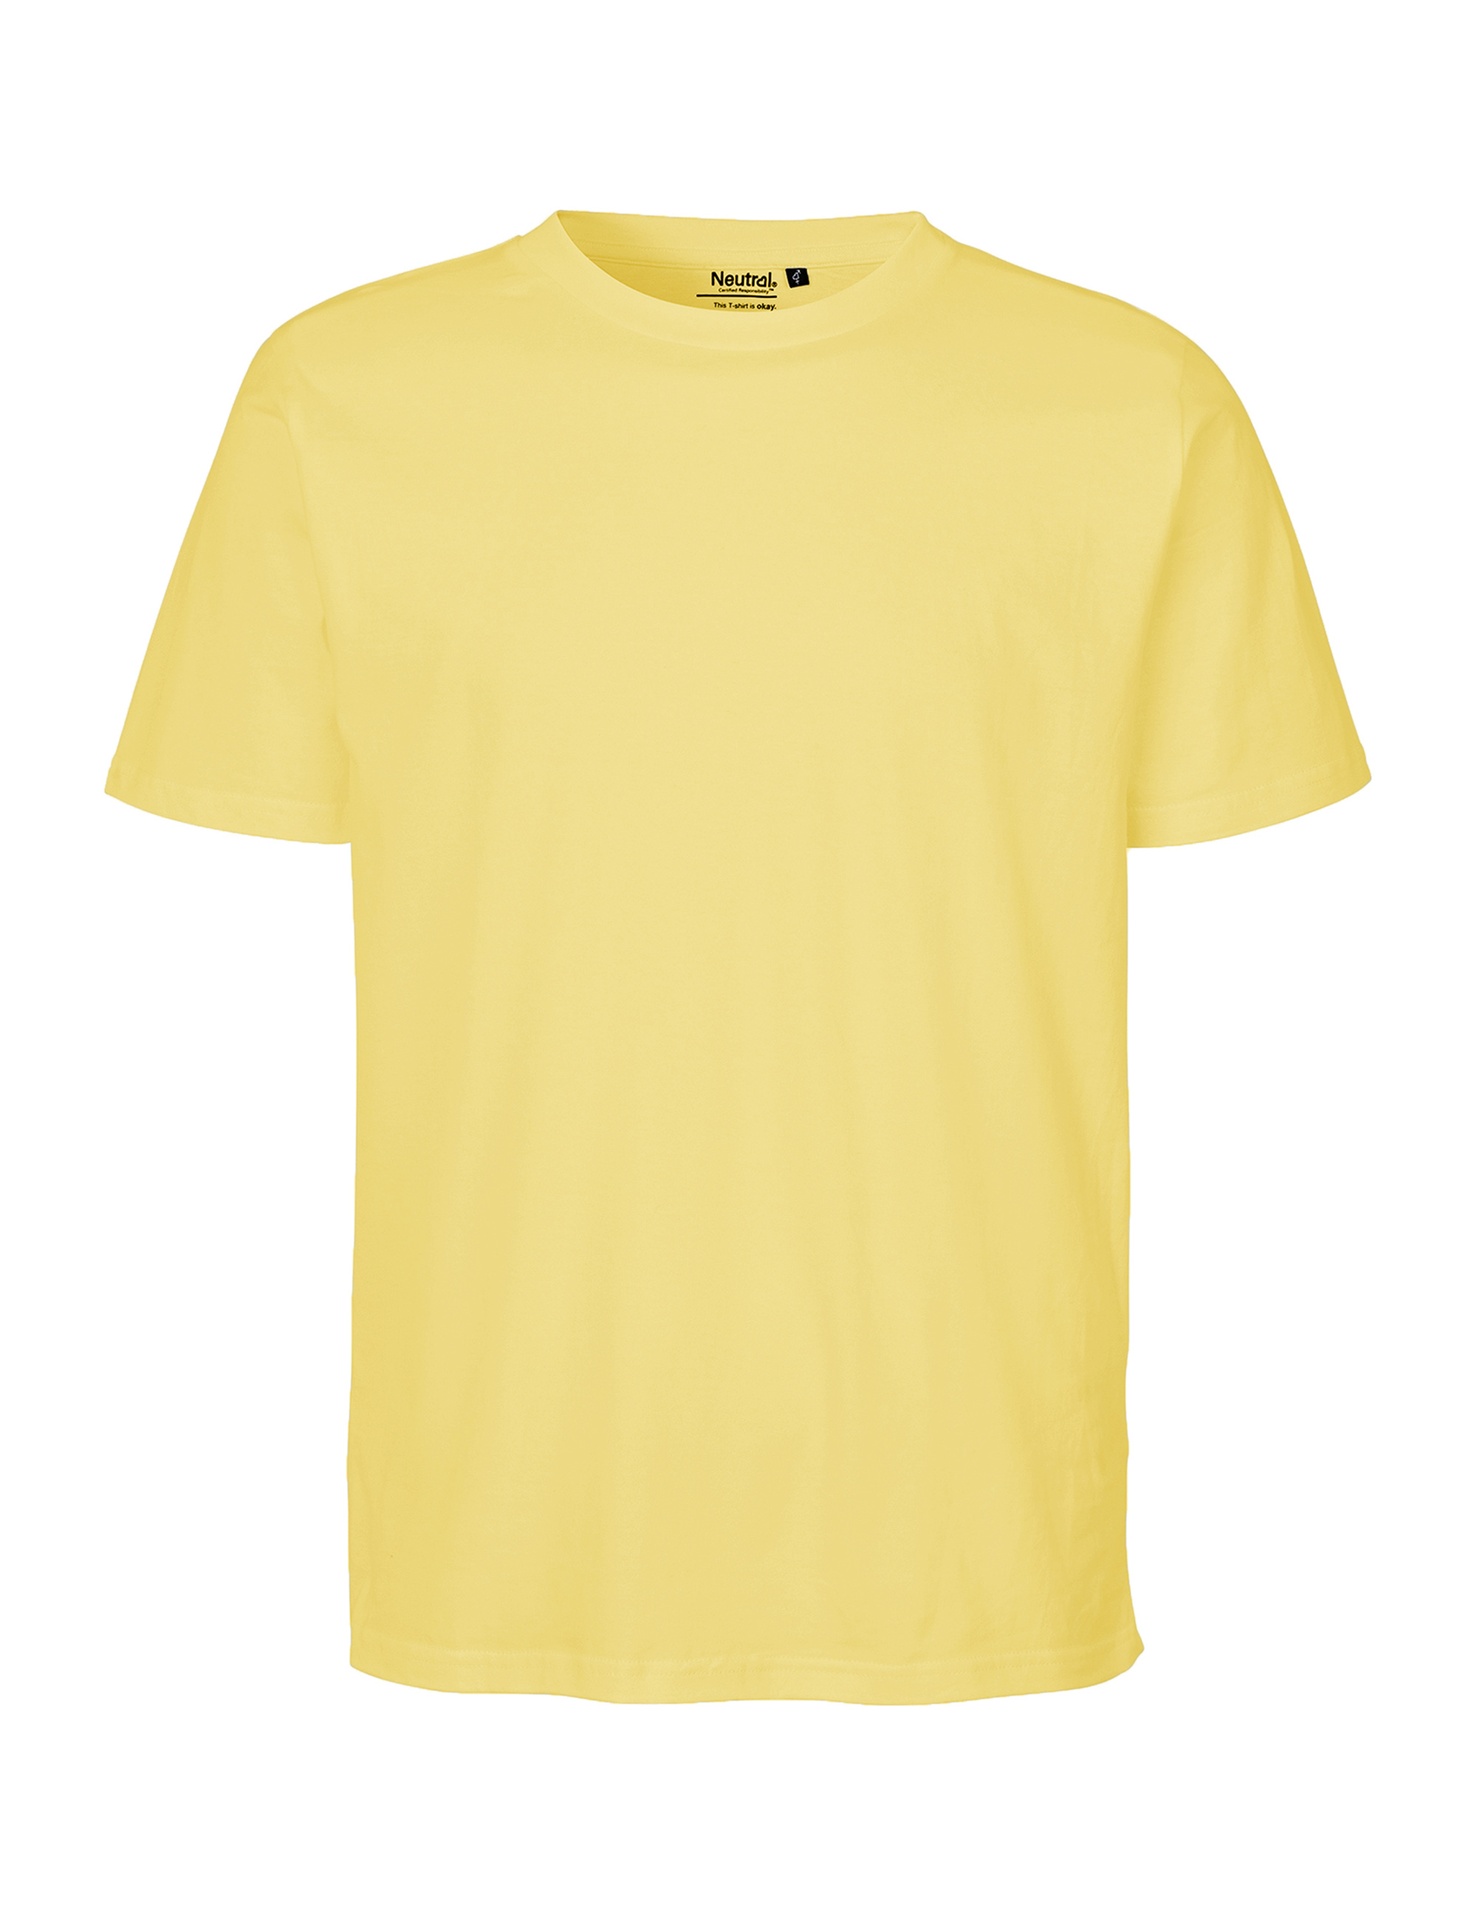 [PR/06656] Unisex Regular T-Shirt (2XL, Teal 52)